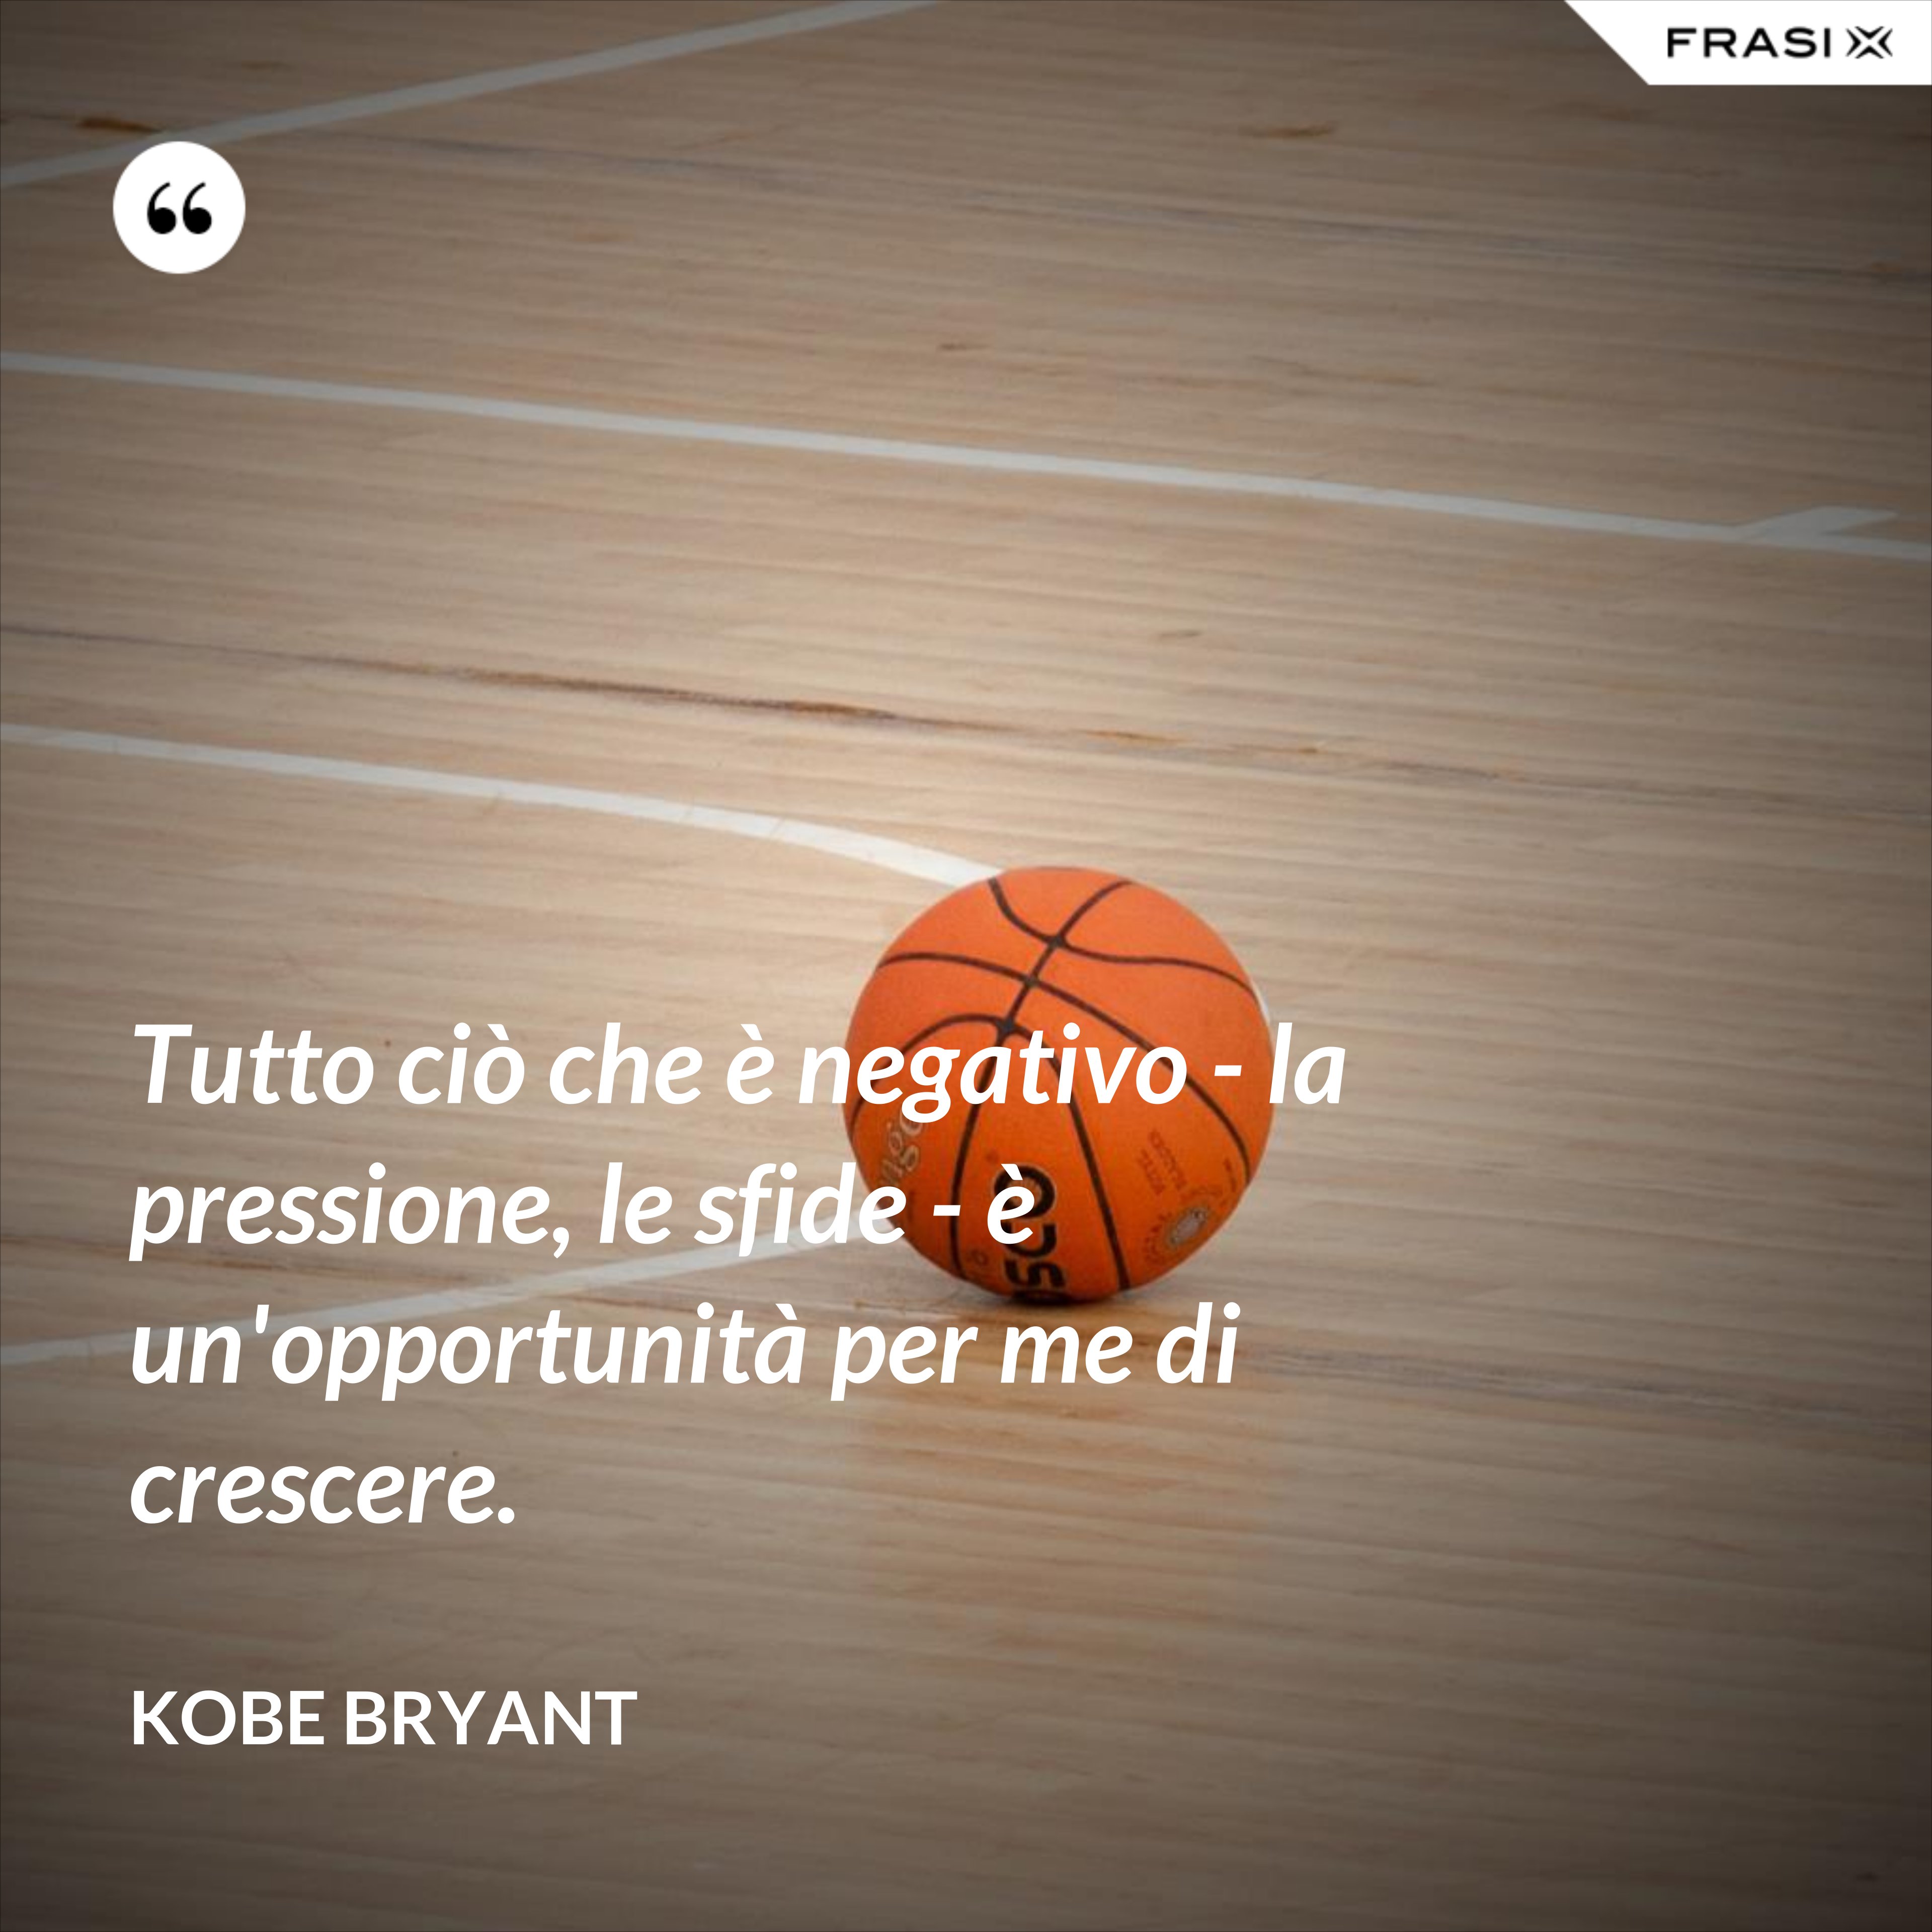 Tutto ciò che è negativo - la pressione, le sfide - è un'opportunità per me di crescere. - Kobe Bryant